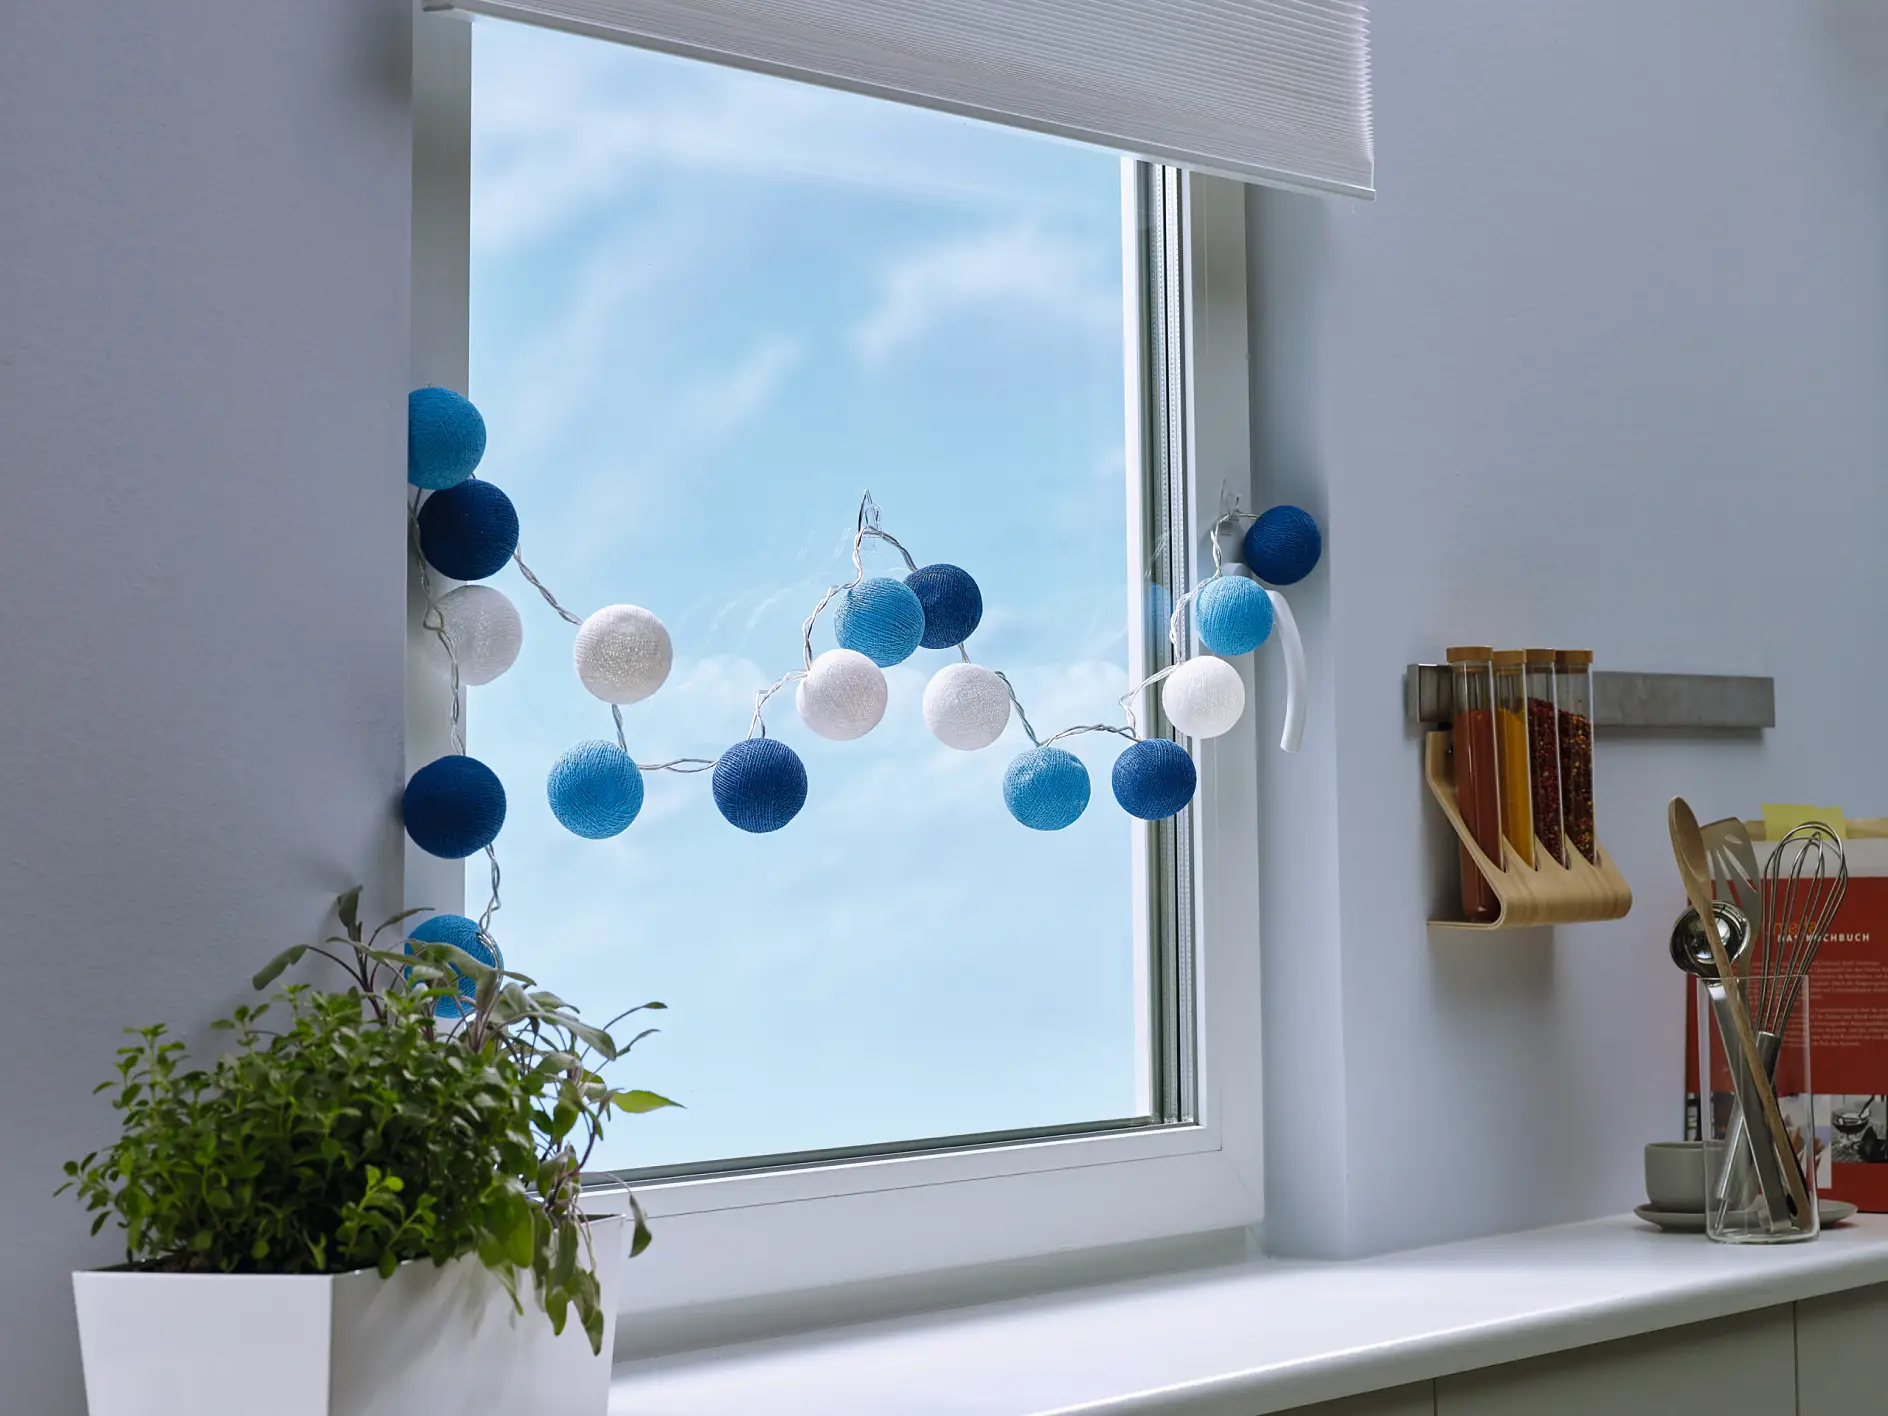 Transparente und fast unsichtbare Klebehaken zum Befestigen von dekorativen Artikeln an Fenstern oder Spiegeln.